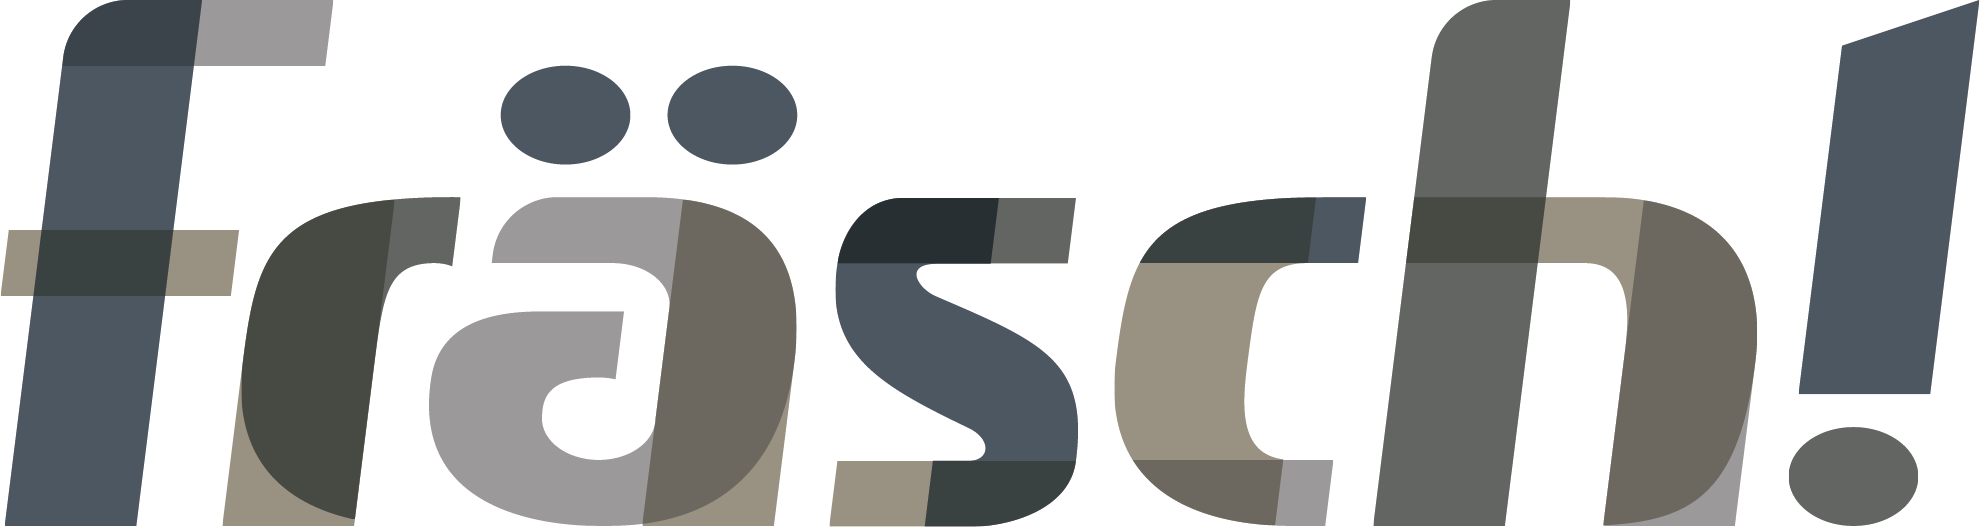 frasch+Logo